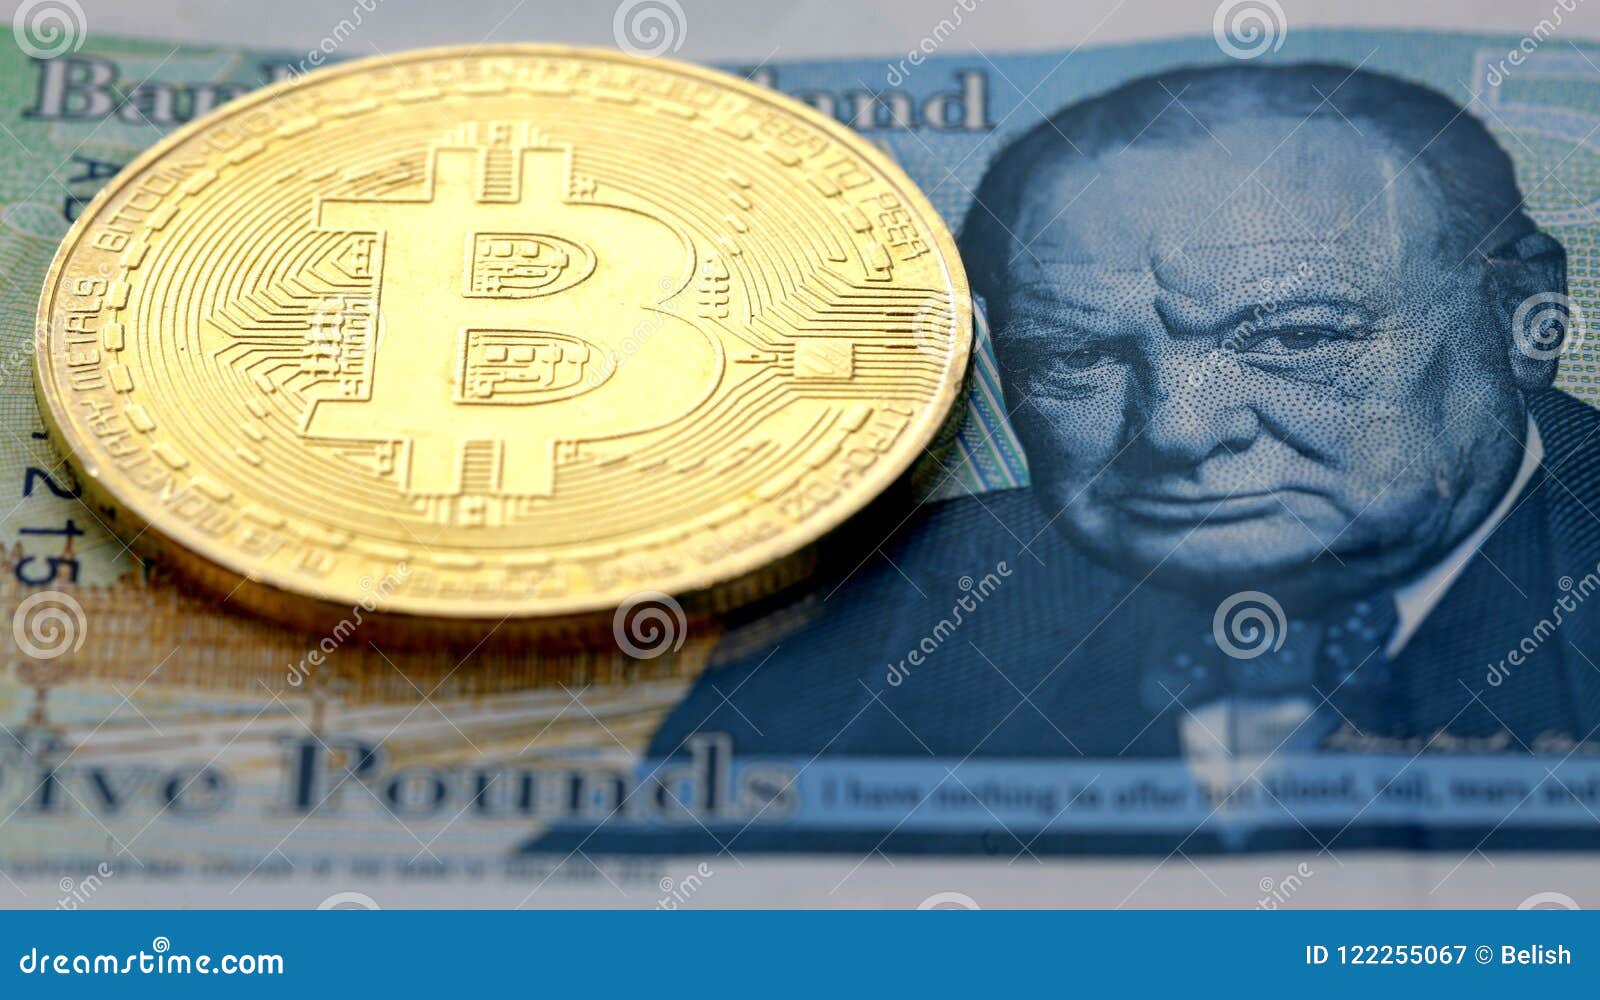 1 bitcoin cash in gbp